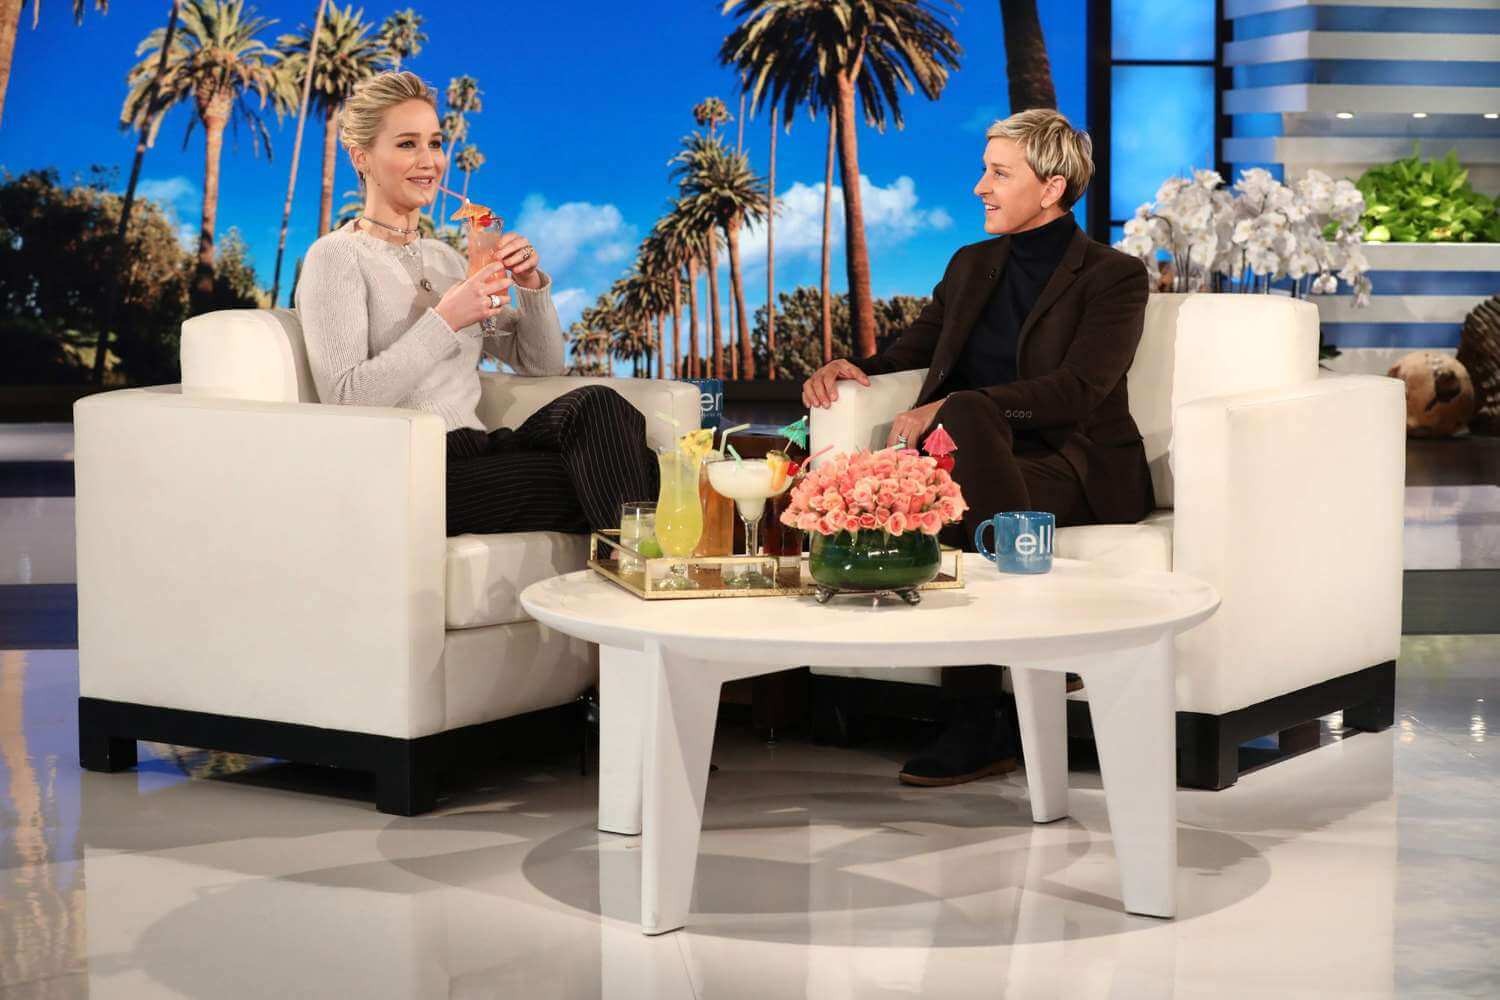 Jennifer Lawrence getting interviewed by Ellen DeGeneres